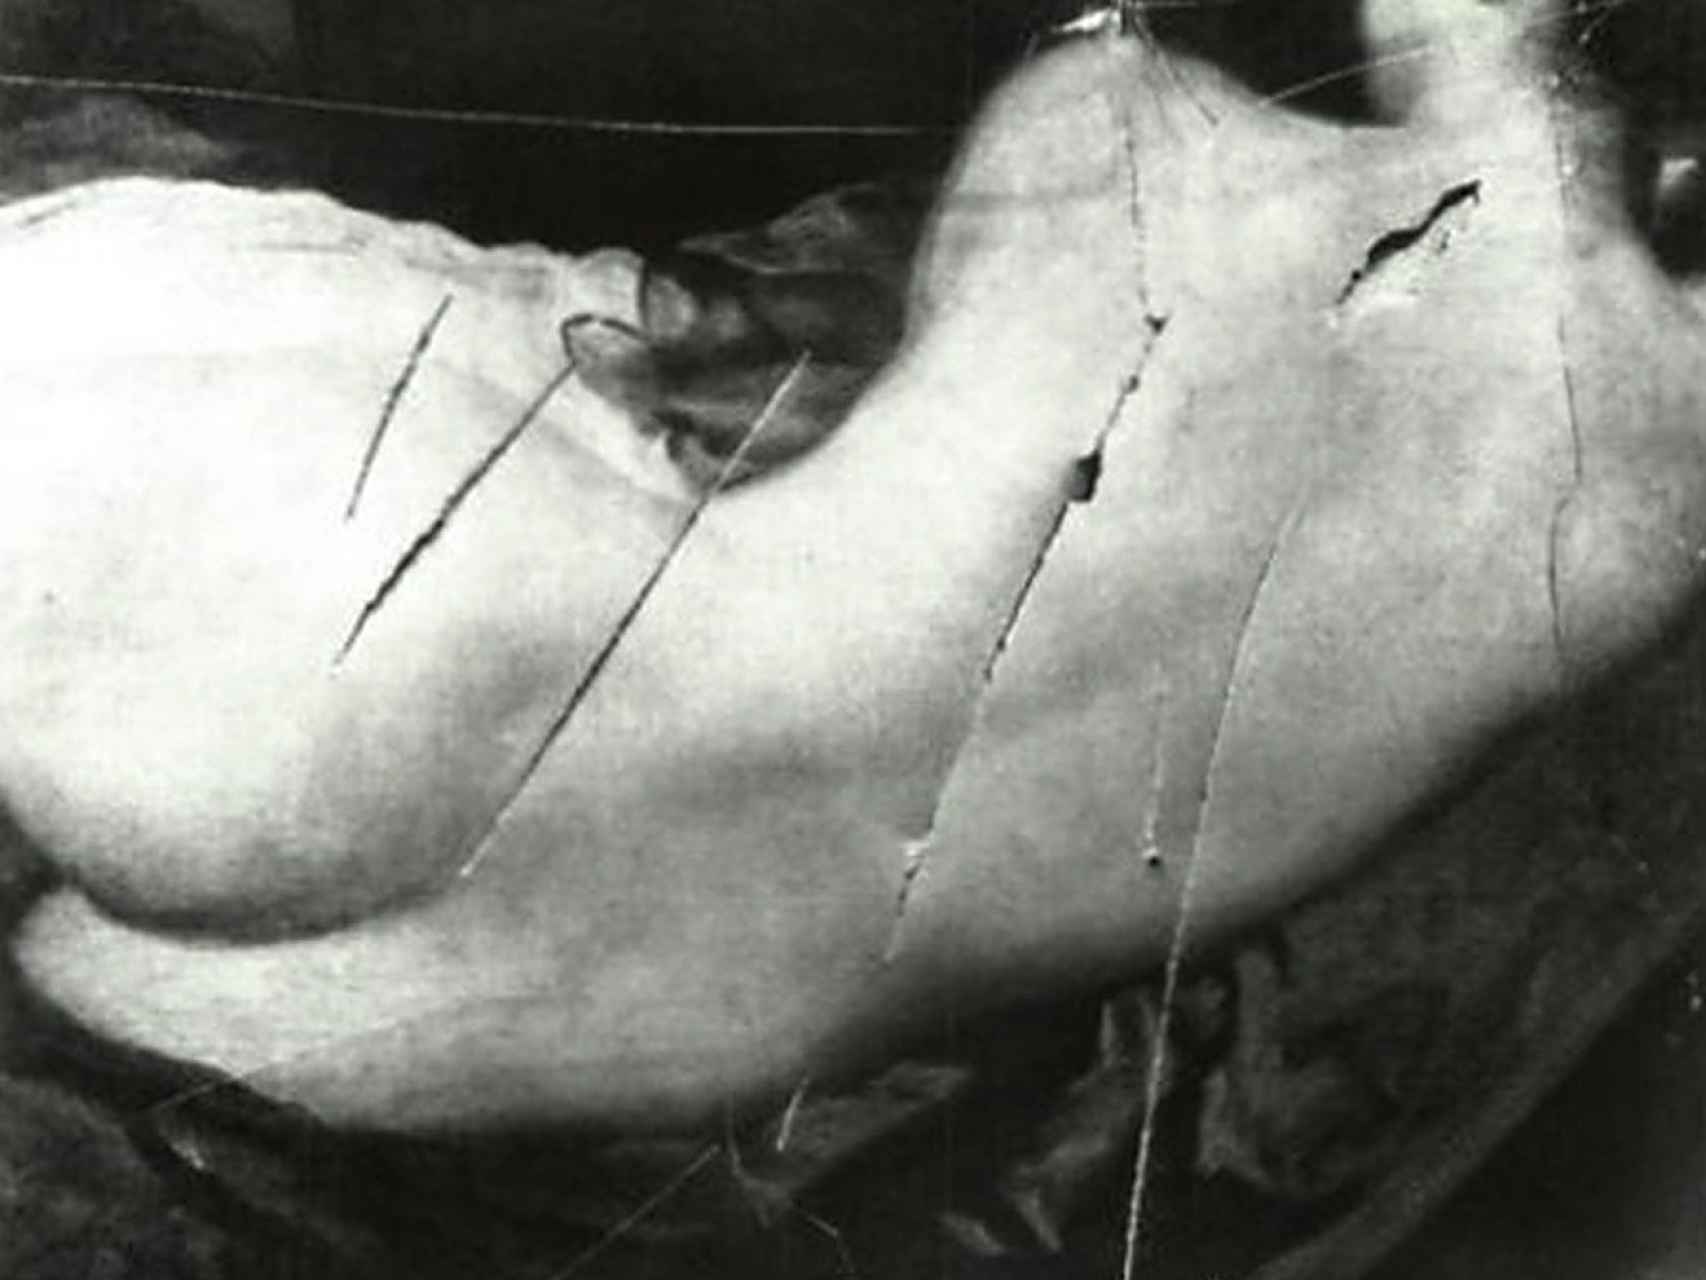 Detalle del lienzo tras las cuchilladas realizadas por una sufragista en 1914.